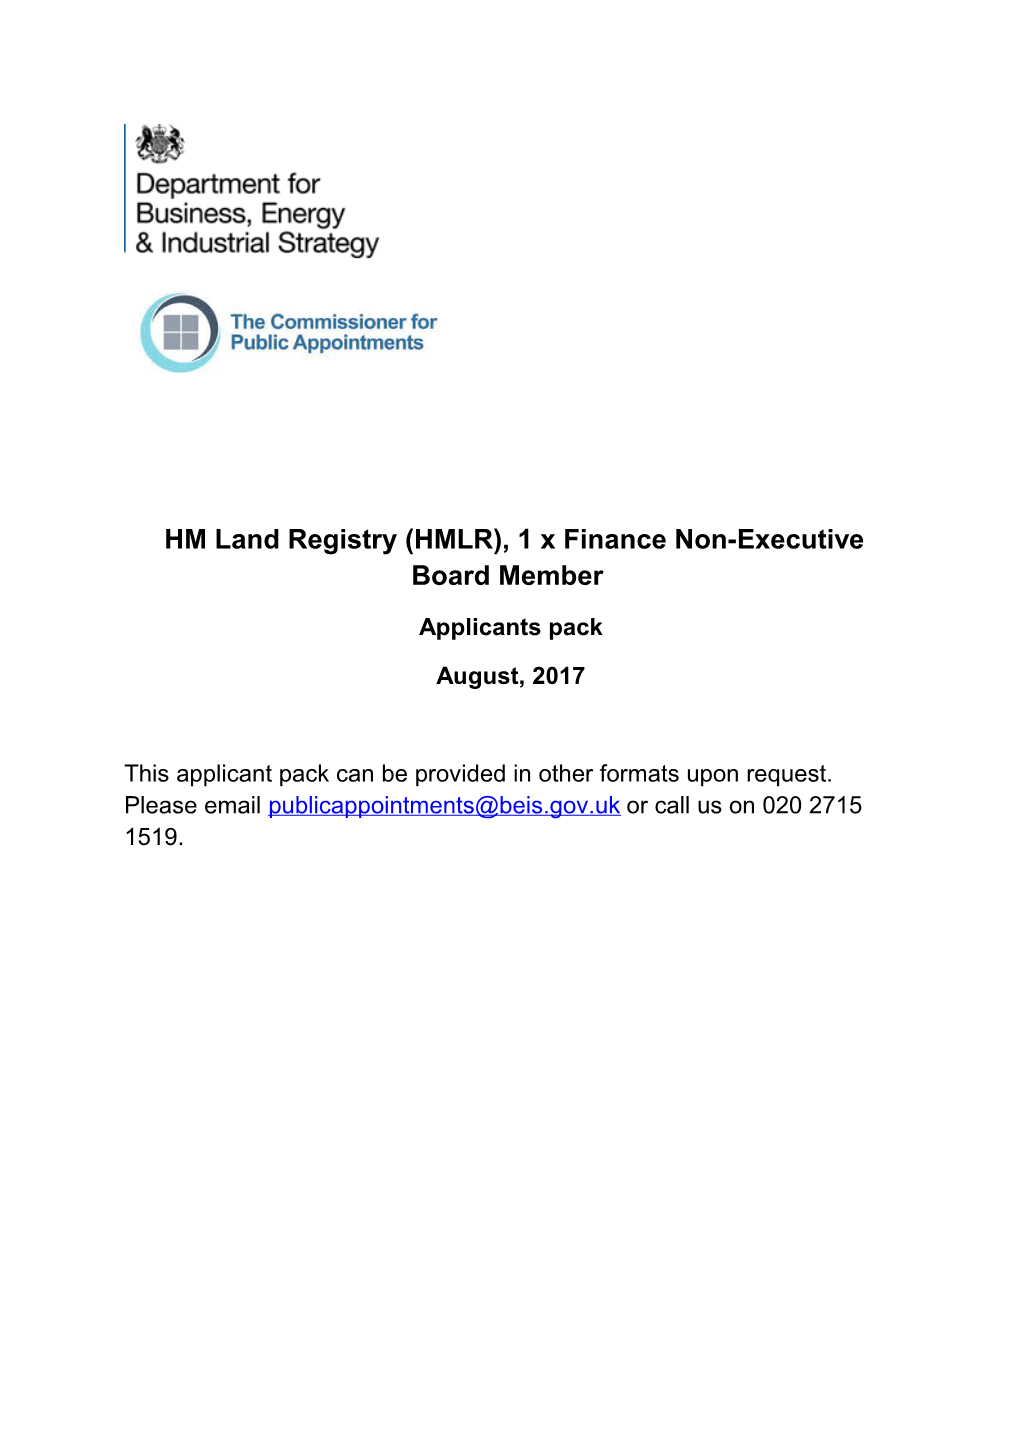 HM Land Registry (HMLR), 1 X Finance Non-Executive Board Member